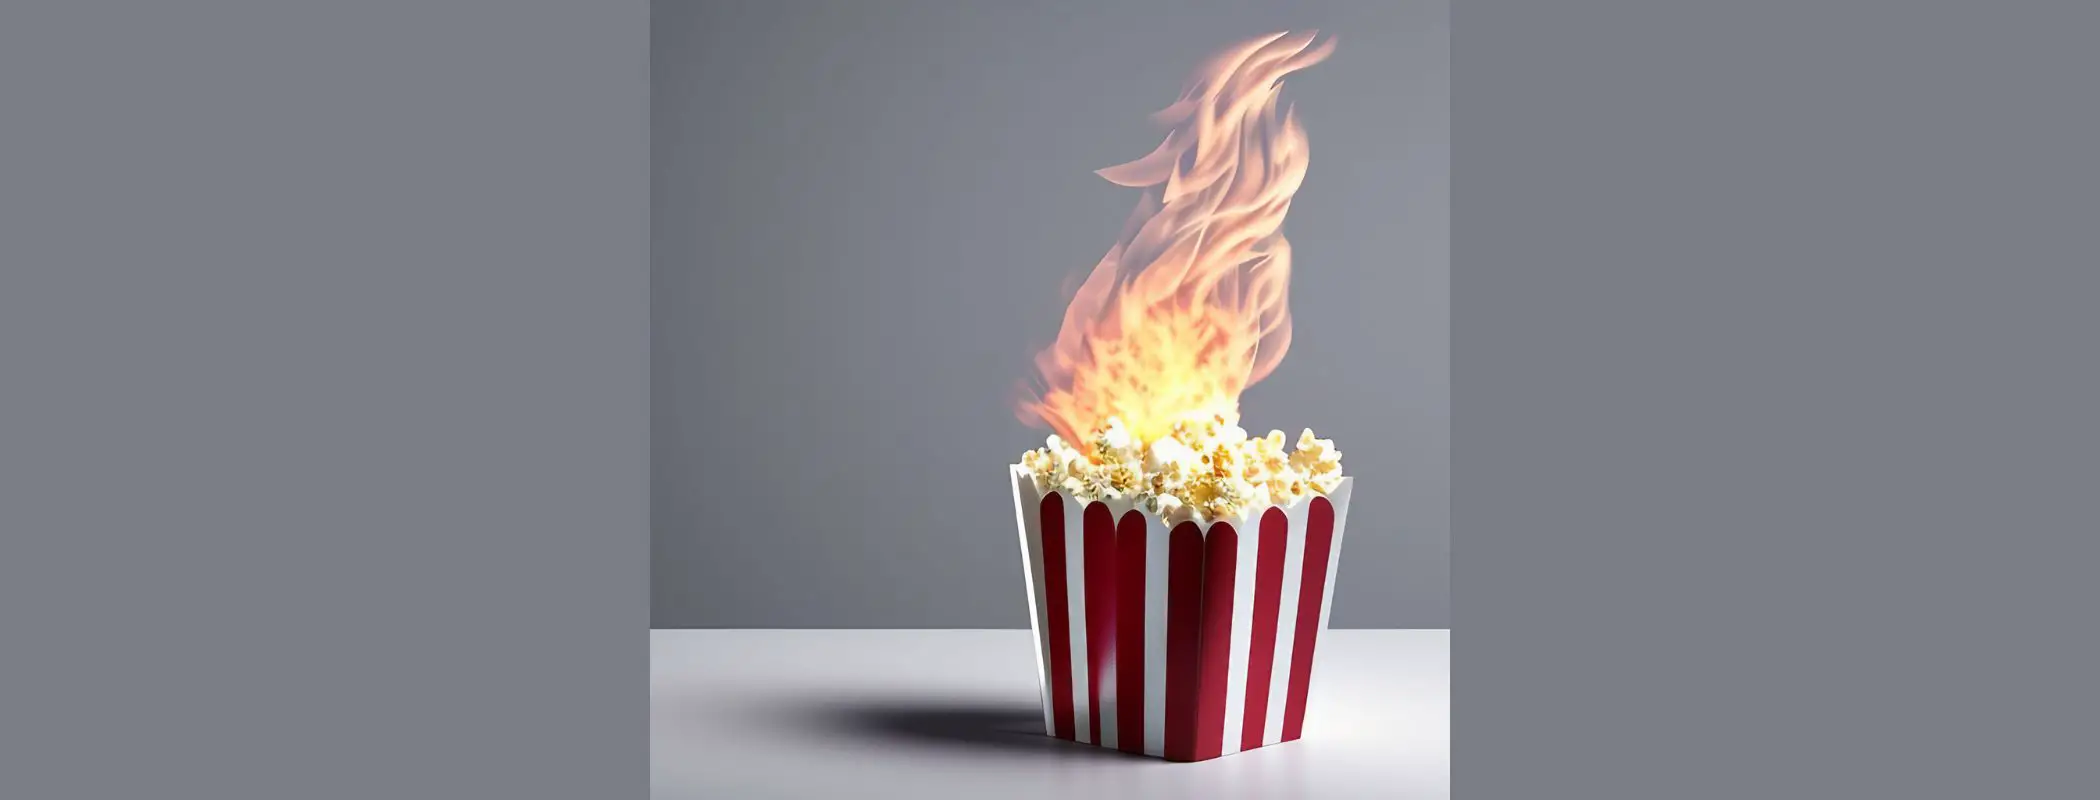 Is Popcorn A Fire Hazard